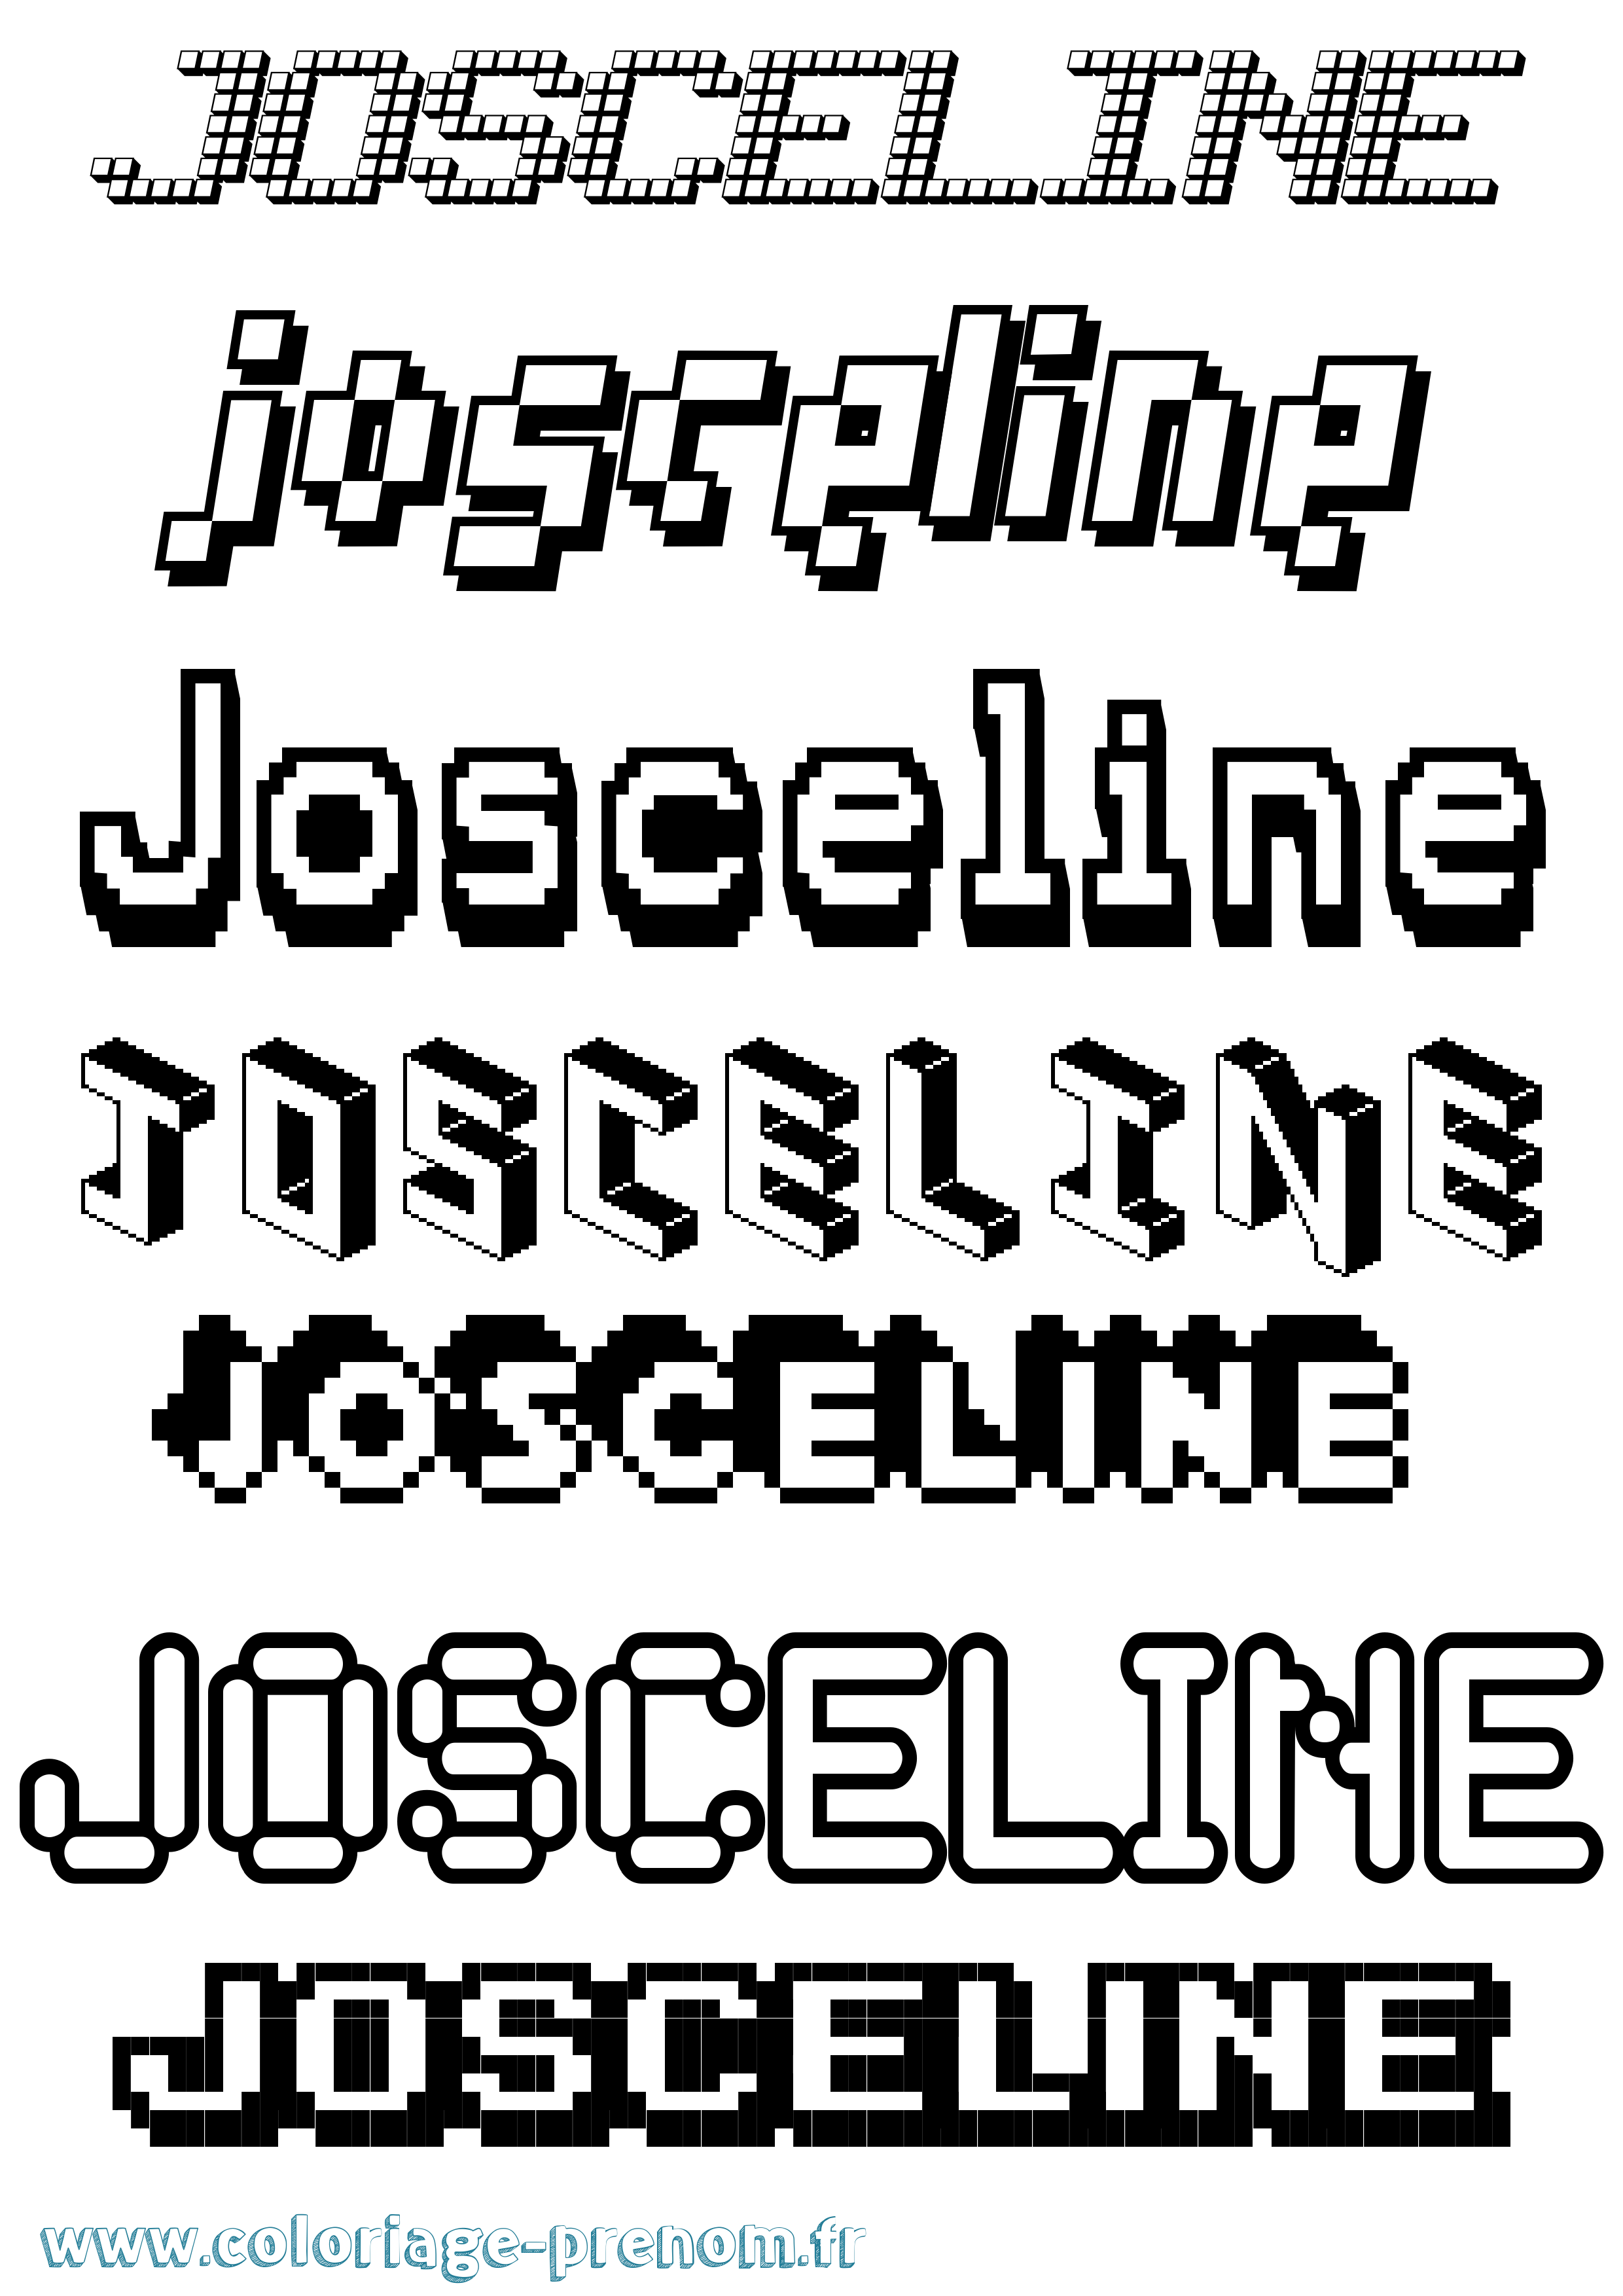 Coloriage prénom Josceline Pixel